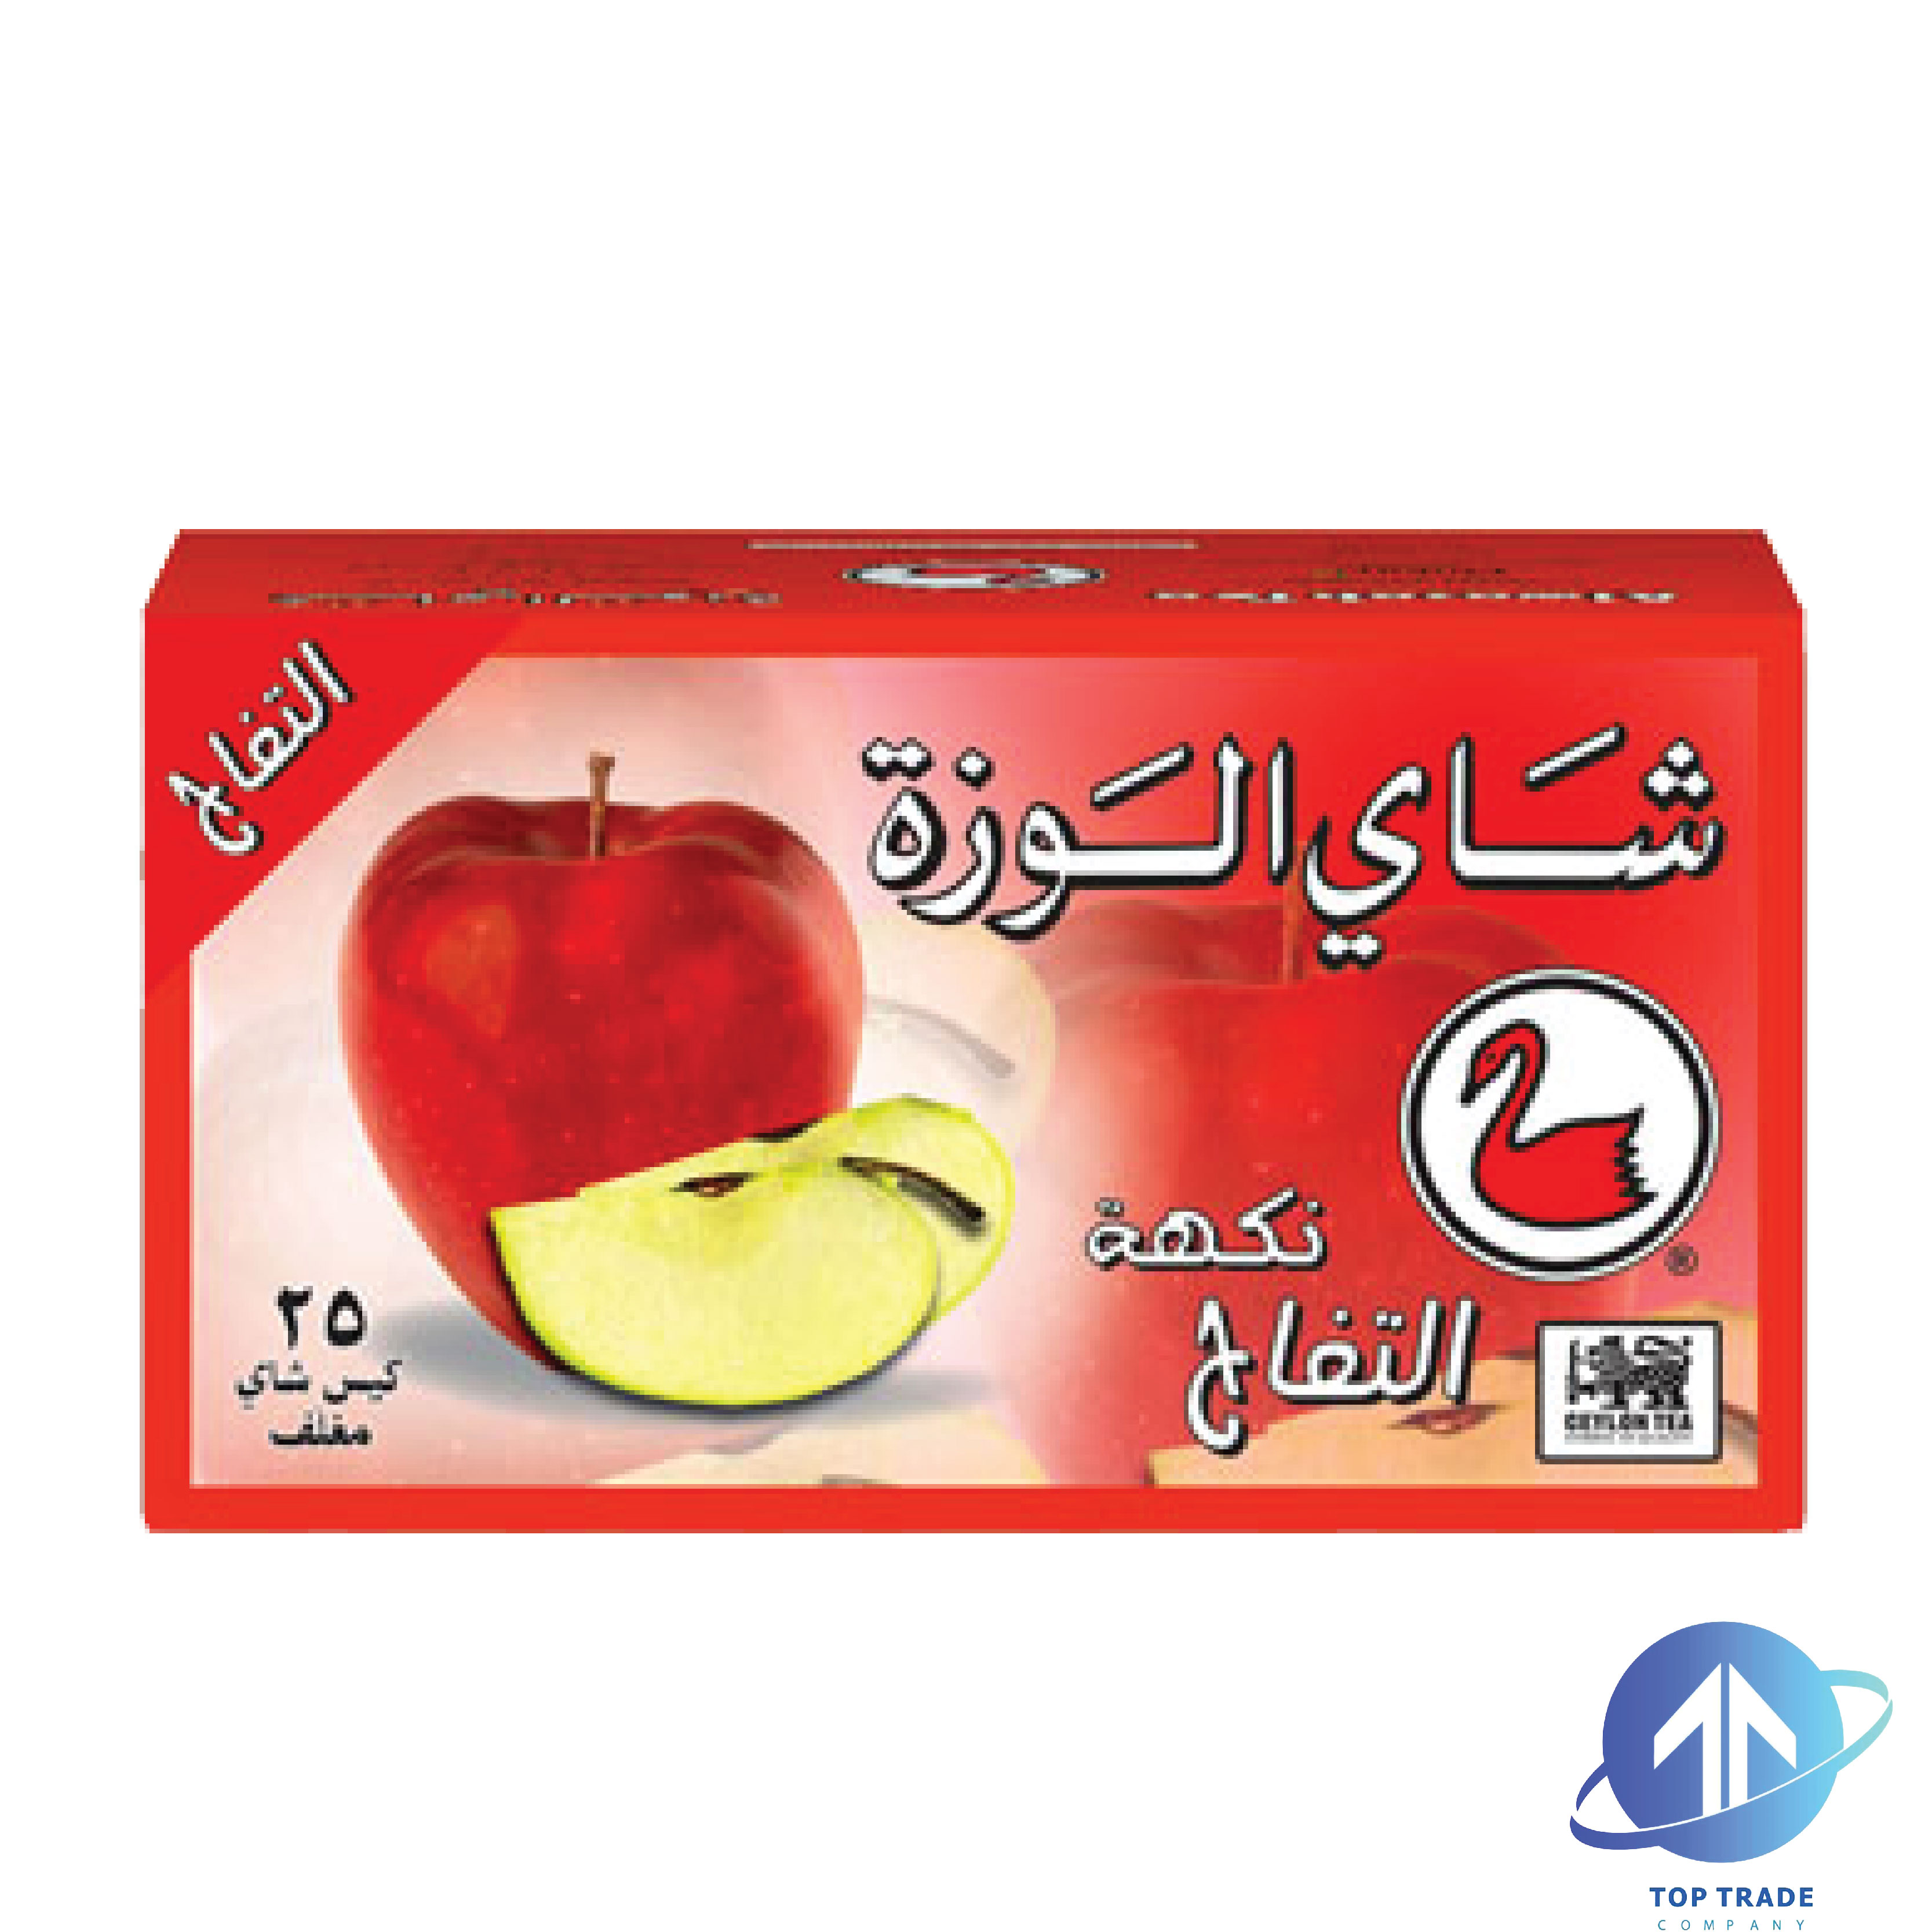 AlWazah Ceylon Apple Tea 25 